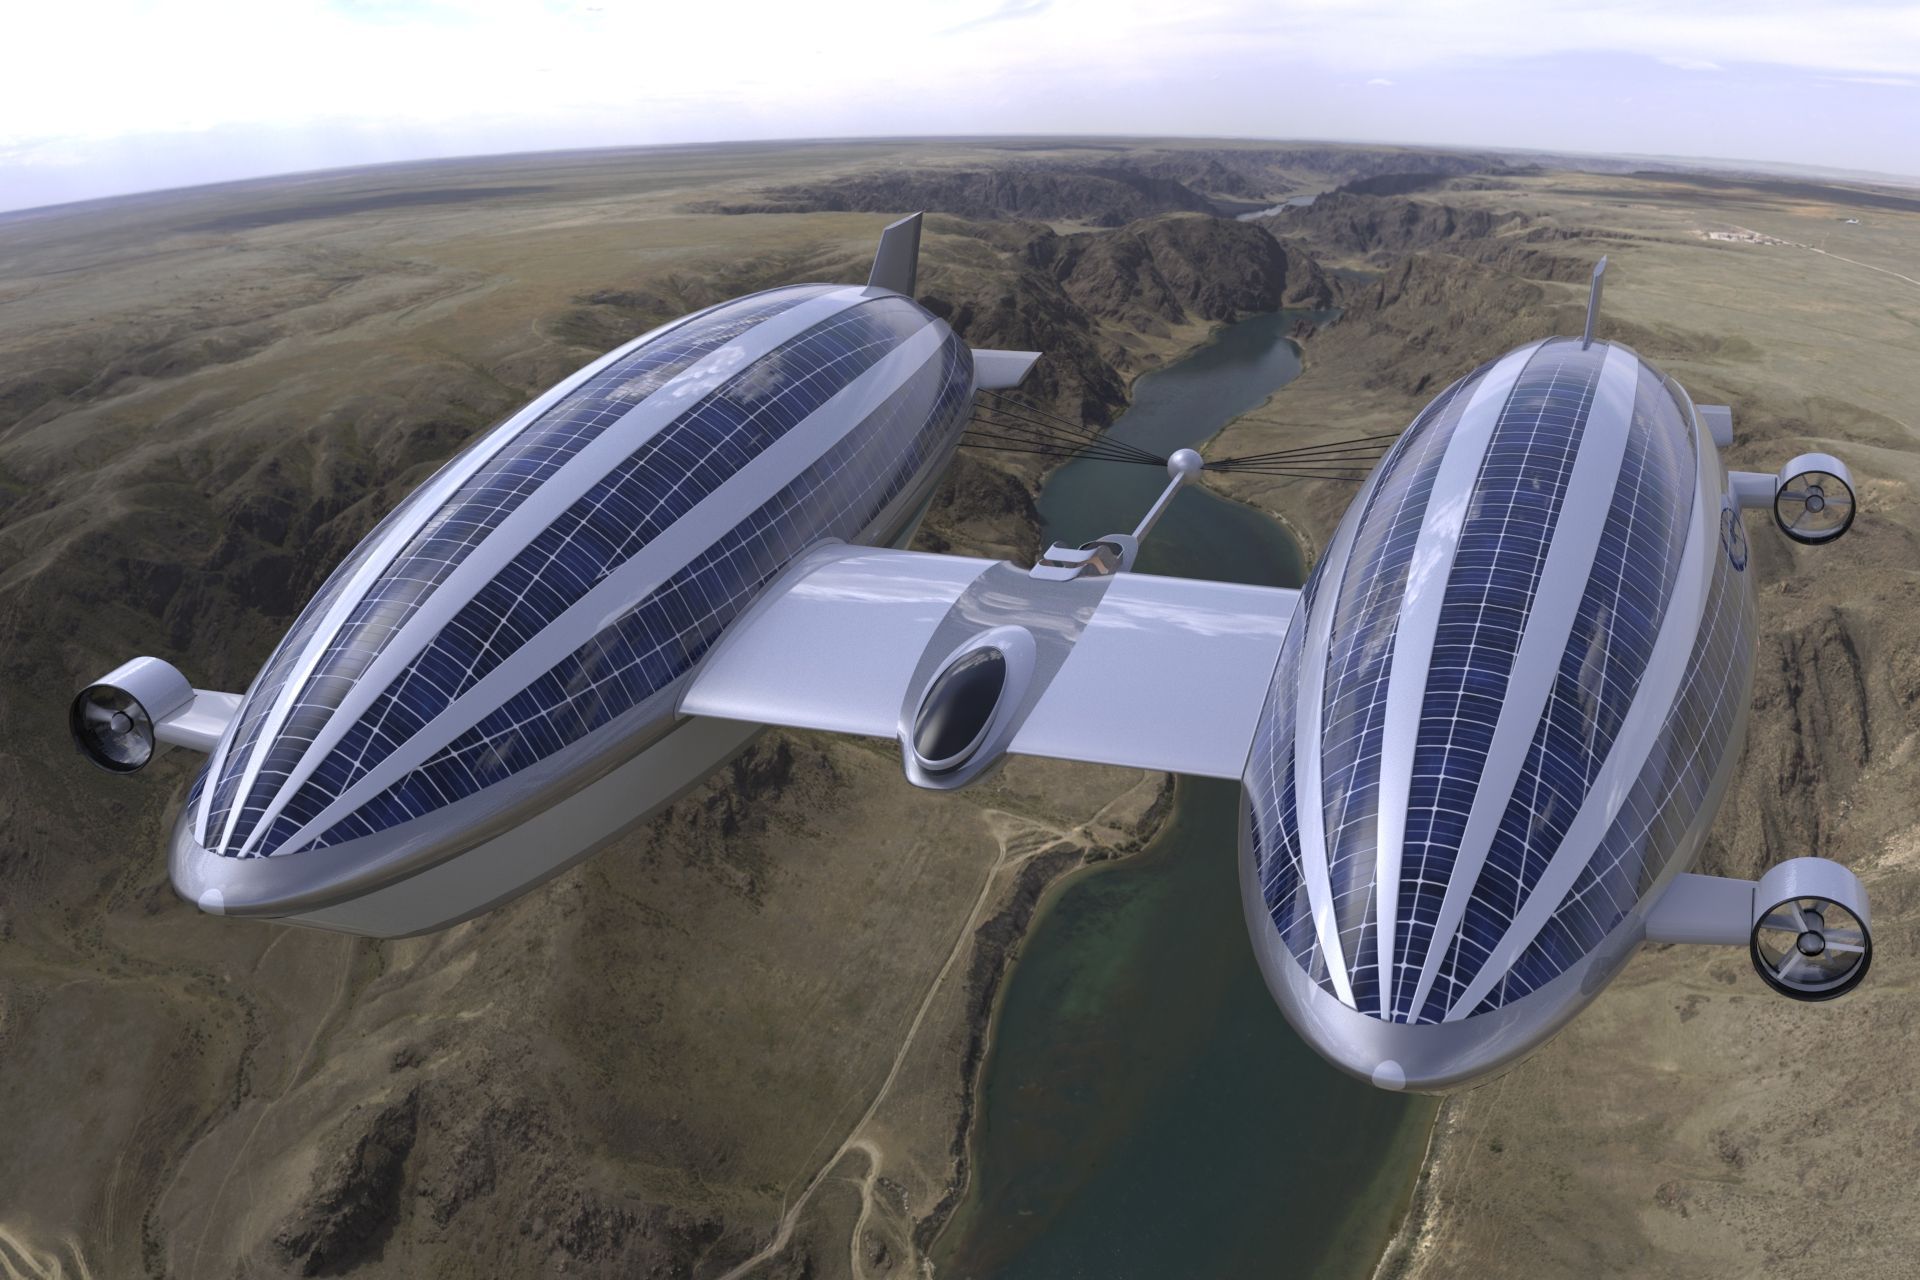 Davamlı hava və suda hərəkətlilik üçün Lazzarini Design studio tərəfindən hazırlanmış "Sky Yacht" konsepsiyasının təkamülü və ya 2-ci versiyası